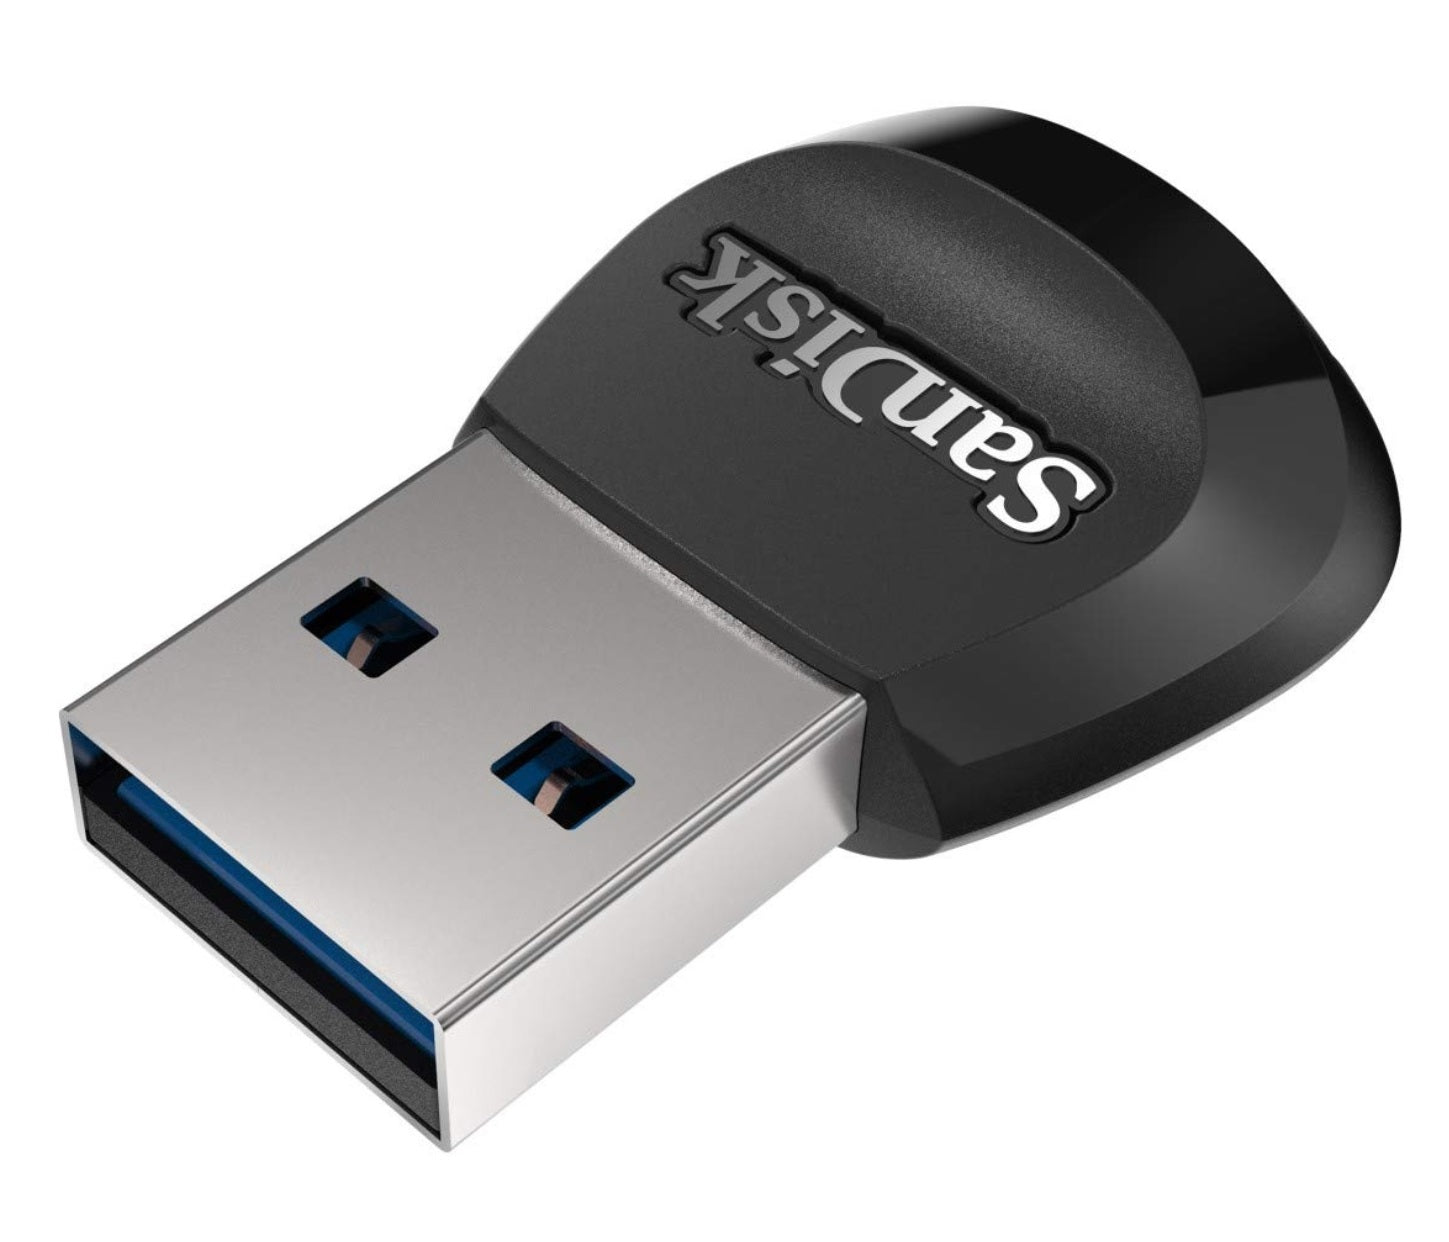 SanDisk MobileMate USB 3.0 microSD Card Reader - SDDR-B531-GN6NN (Like New, Open Box)